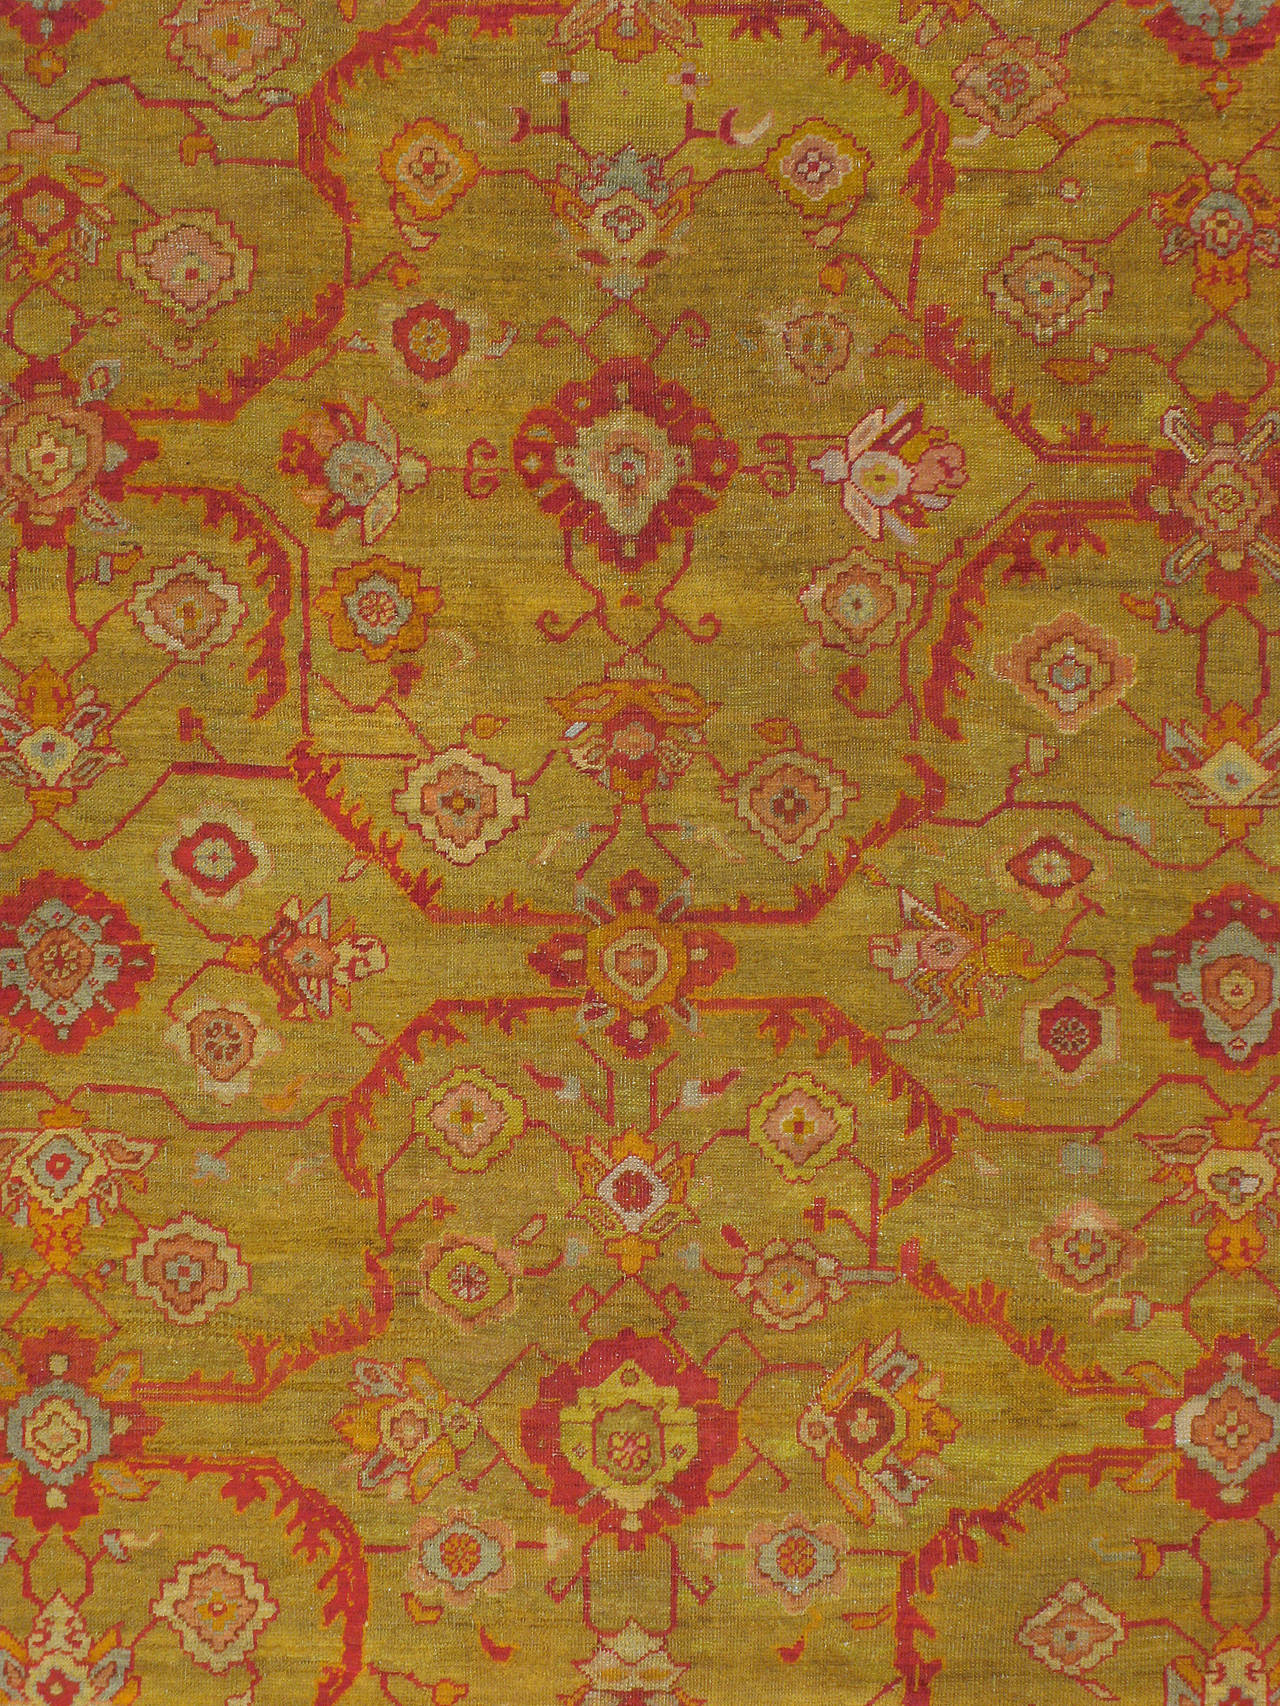 Ein alter türkischer Oushak-Teppich aus dem zweiten Viertel des 20. Jahrhunderts in saurem Grün, 10' x 13' Raumgröße.

Maße: 10' 8